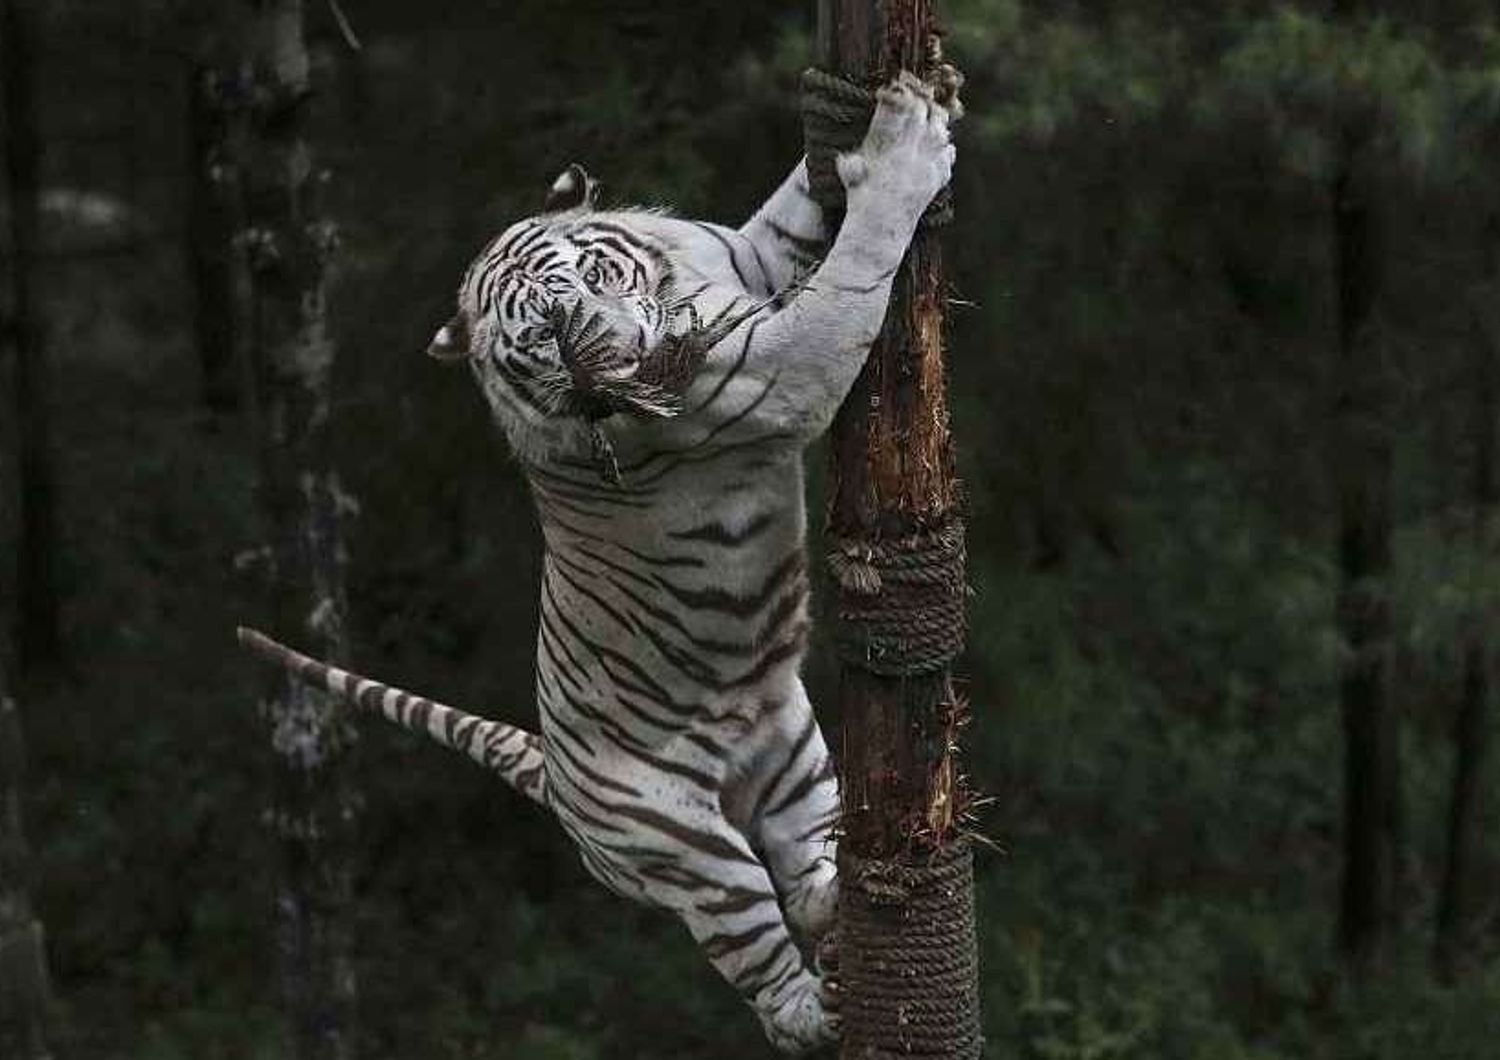 Orrore in India: 12enne sbranato da una rara tigre bianca allo zoo - Video